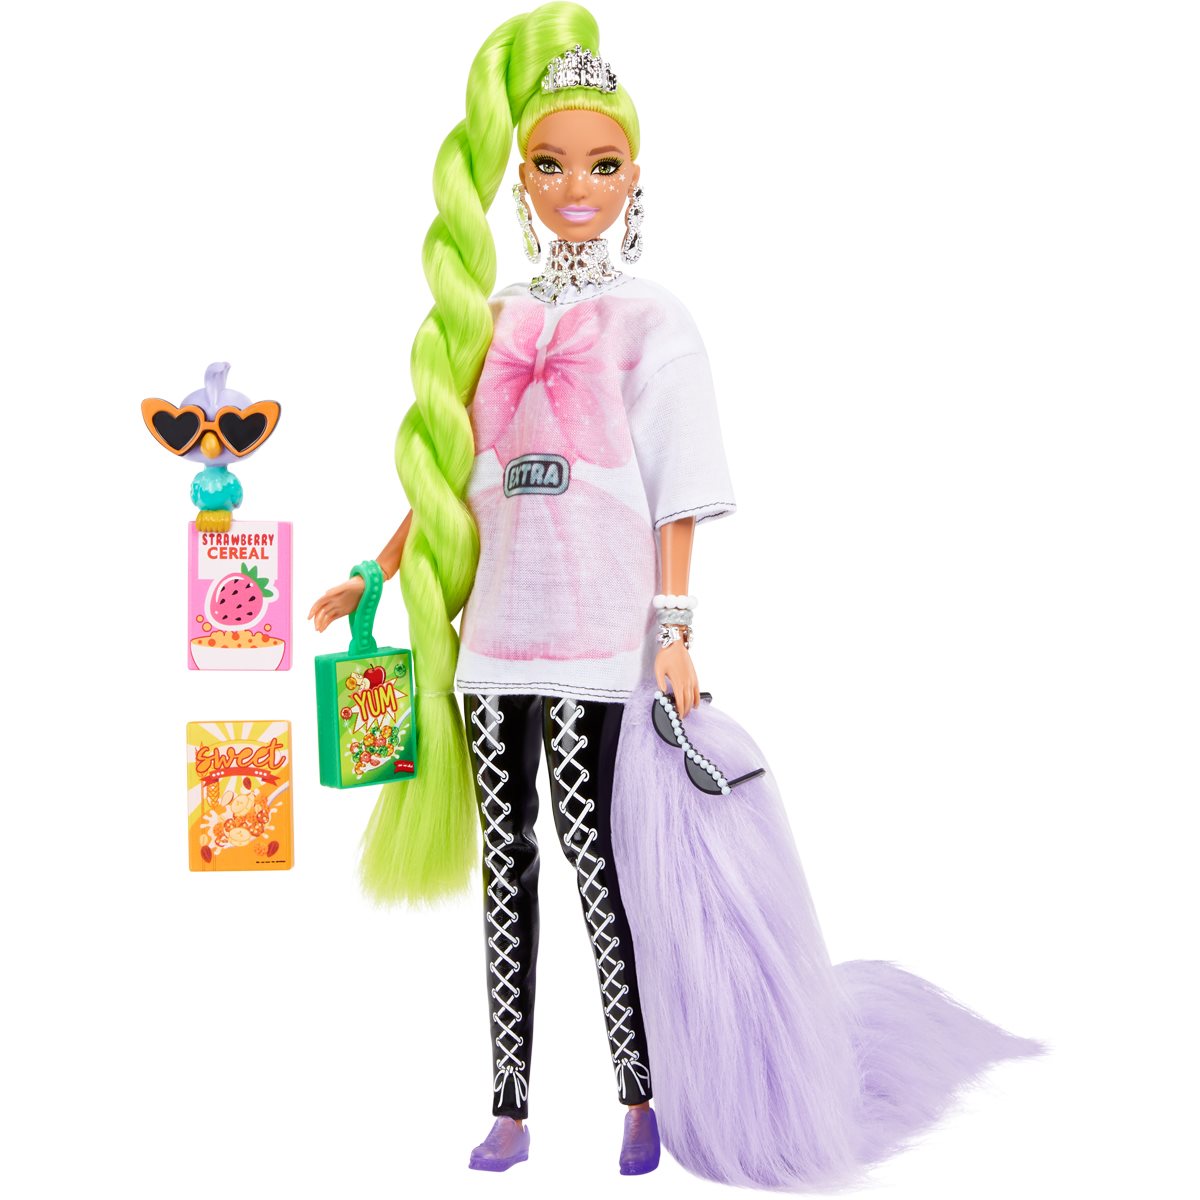 Panenka Barbie Extra od Mattela - s neonově zelenými vlasy